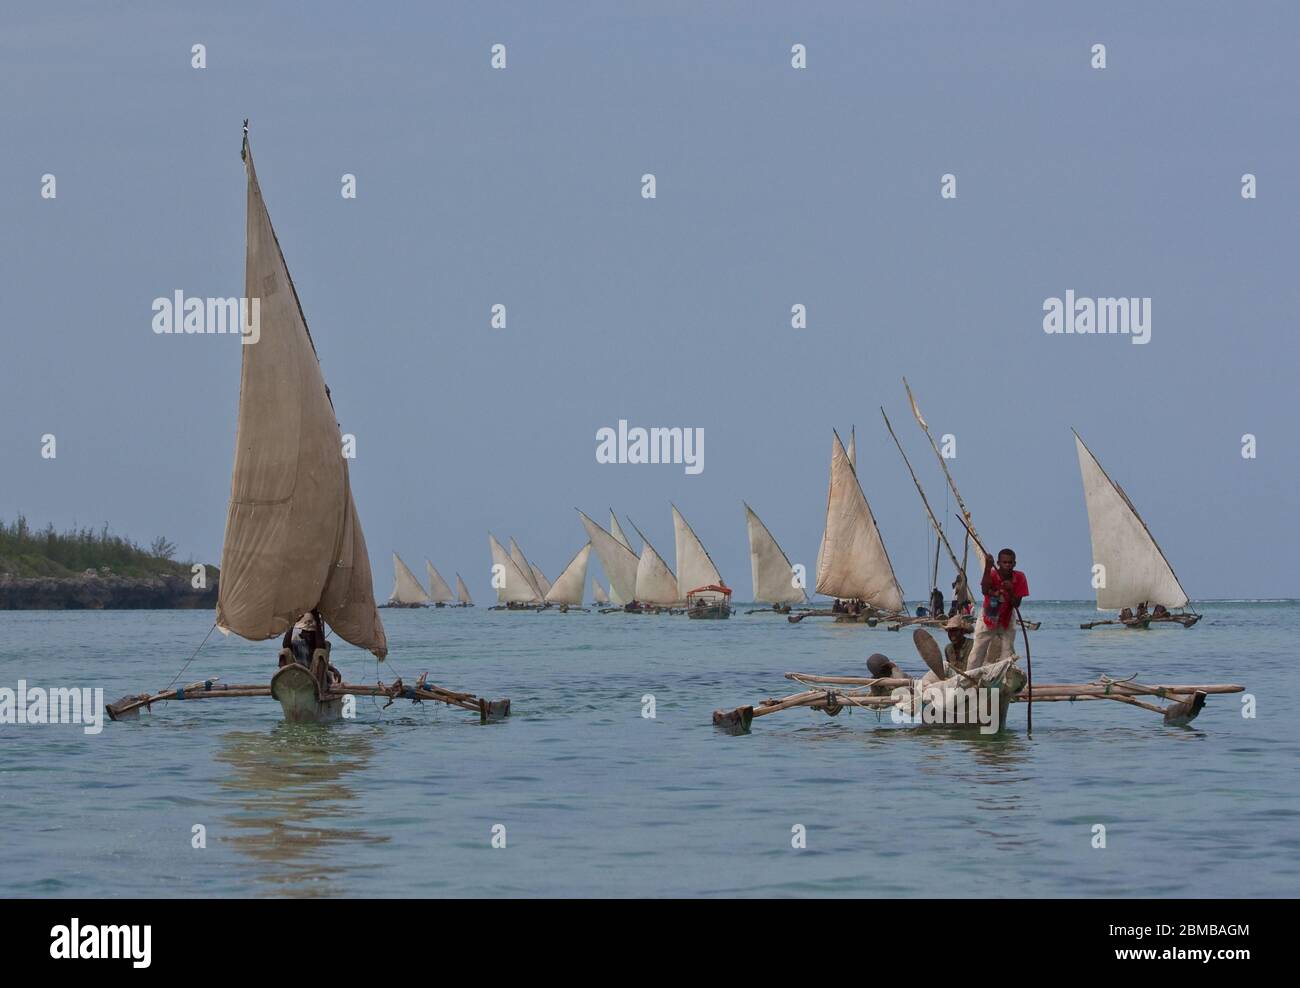 Zanzibar, Tanzanie : bateaux de pêche traditionnels en bois à l'outrigger avec voile ouverte de retour de l'océan Banque D'Images